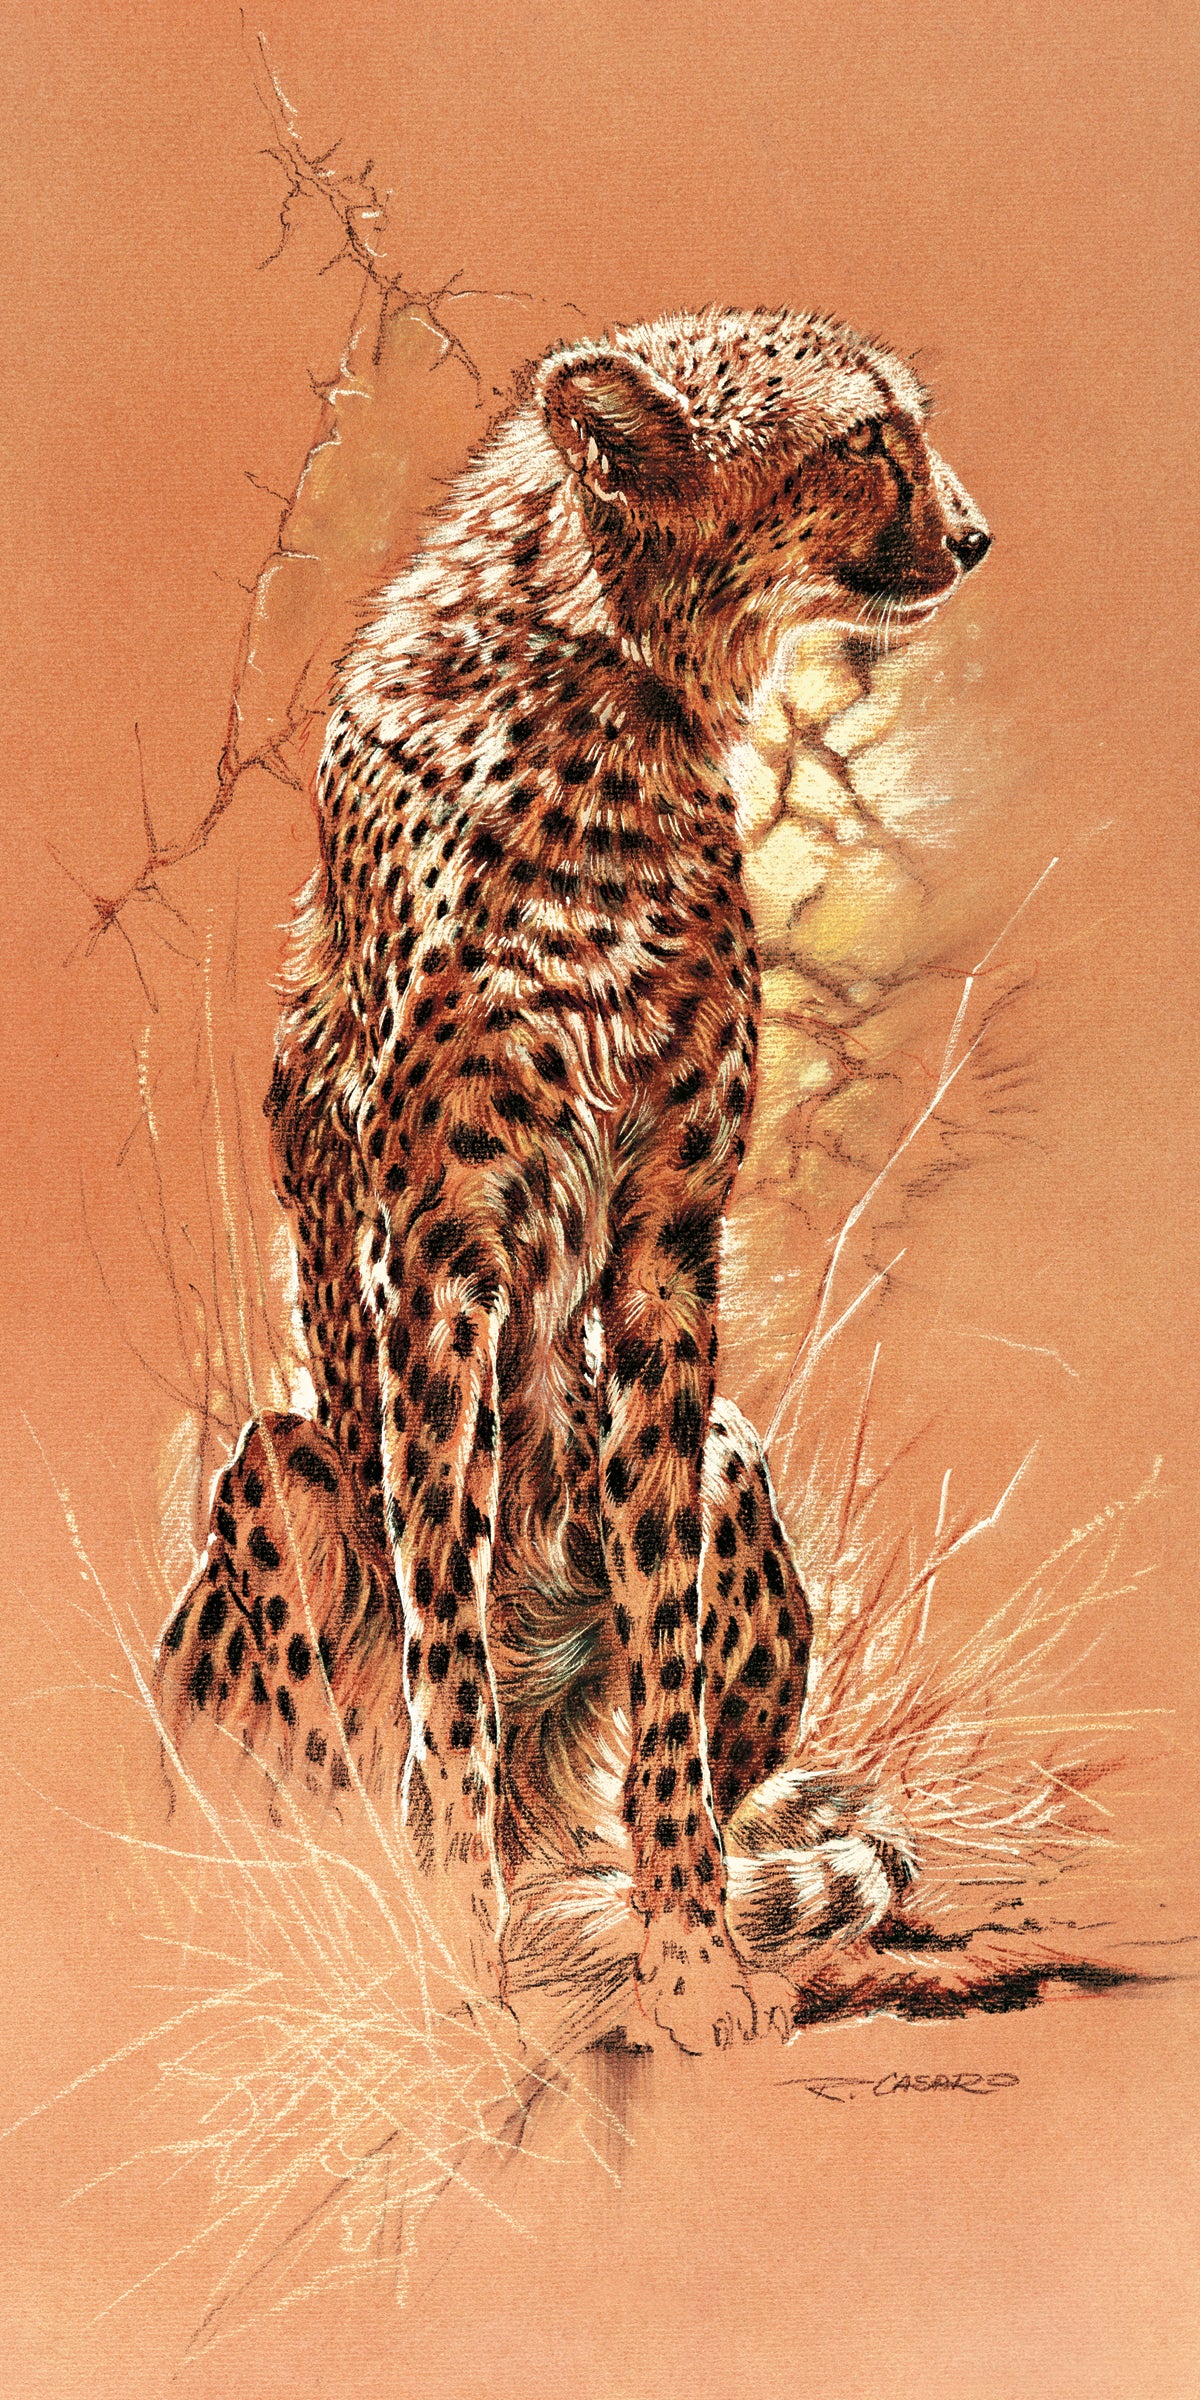 Renato Casaro - Cheetah